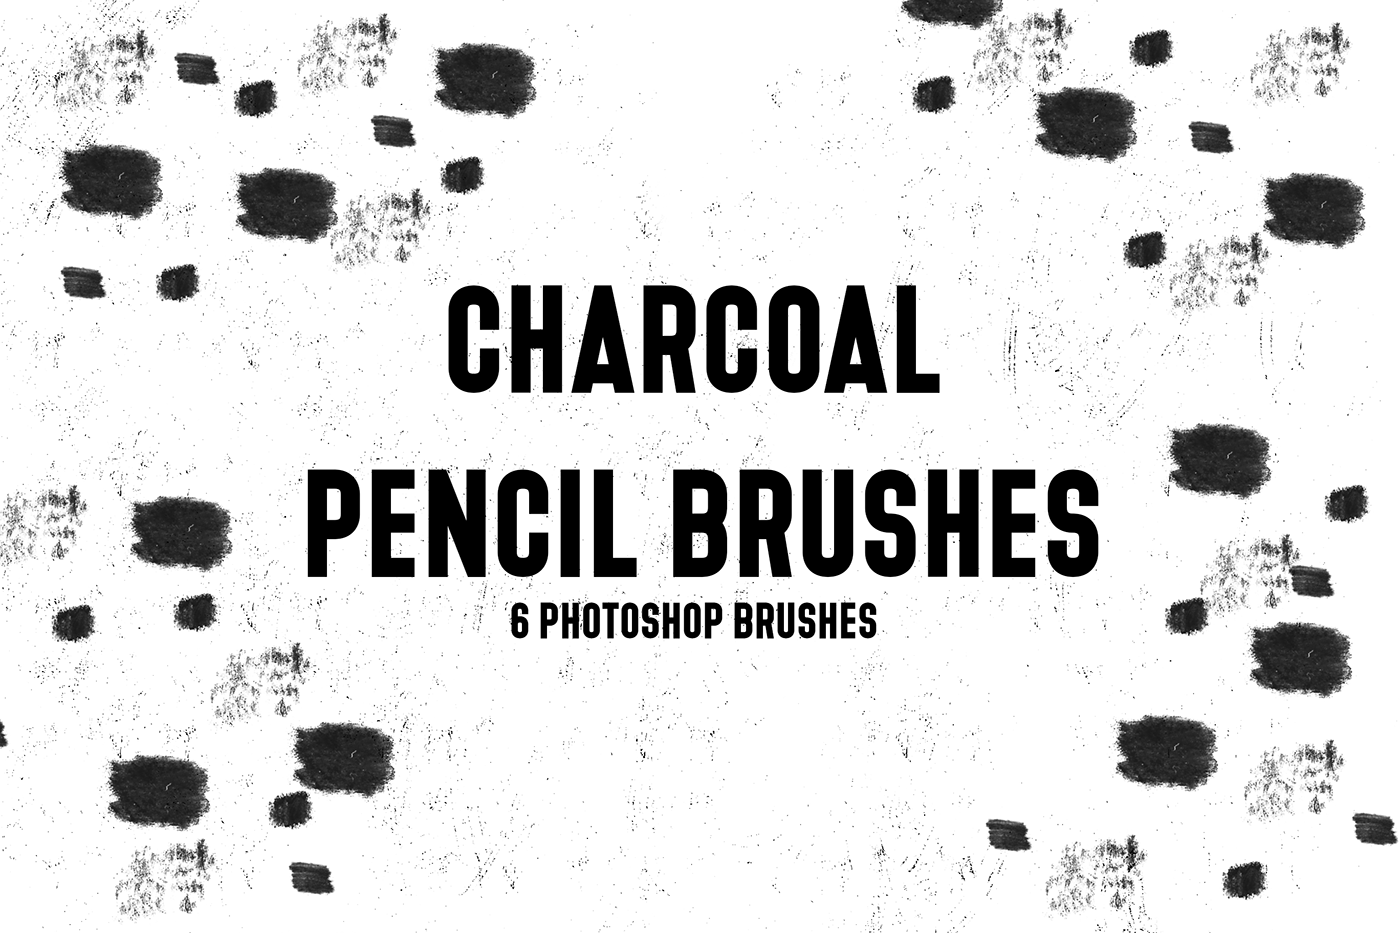 Free Charcoal Pencil Brushes (6 Photoshop Brushes)